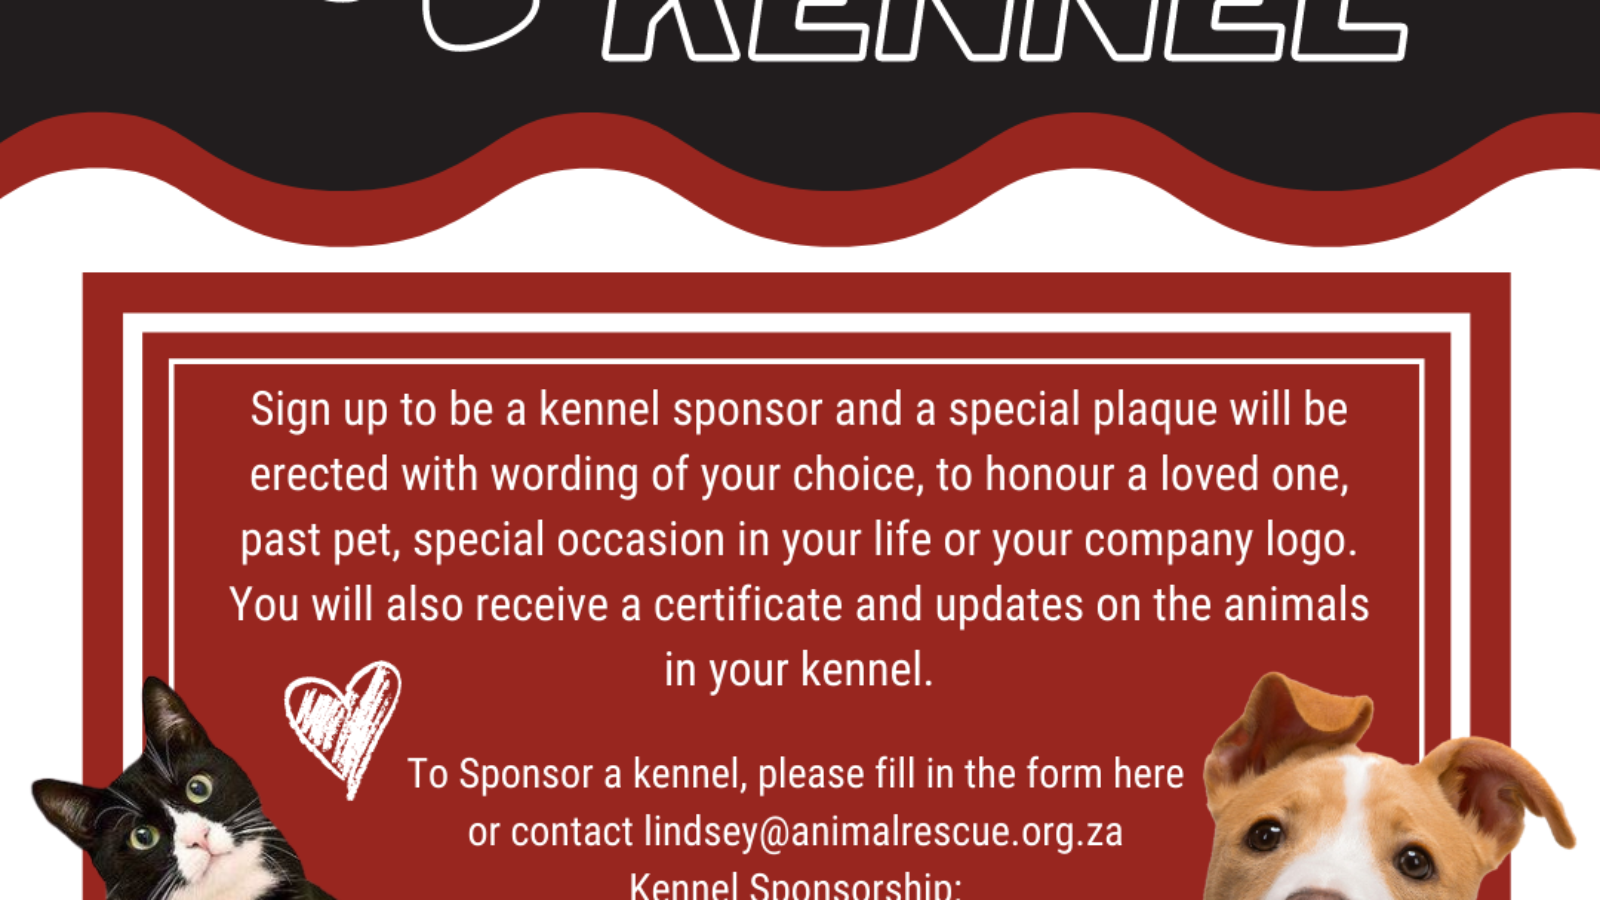 Kennel sponsorship poster for website